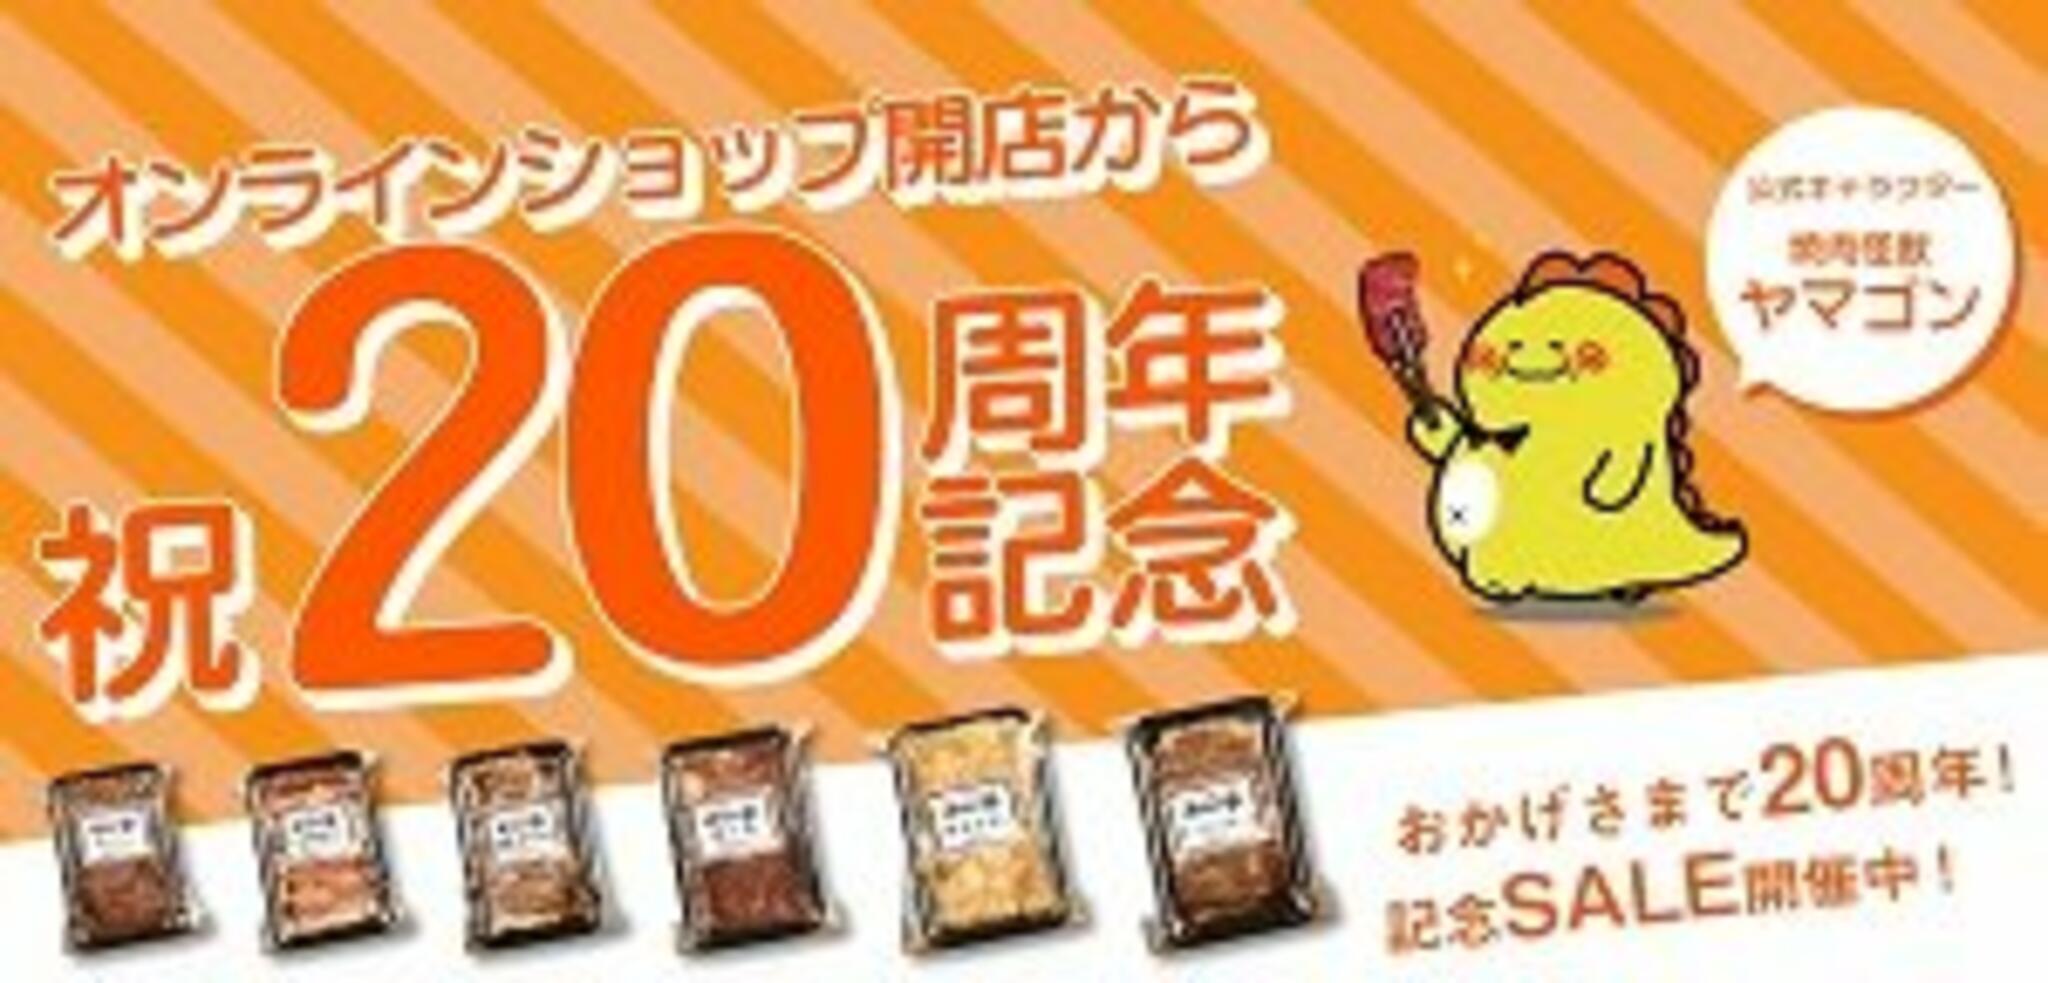 焼肉冷麺やまなか家 西多賀店からのお知らせ(やまなか家オンラインショップ20周年記念SALE開催中です！)に関する写真